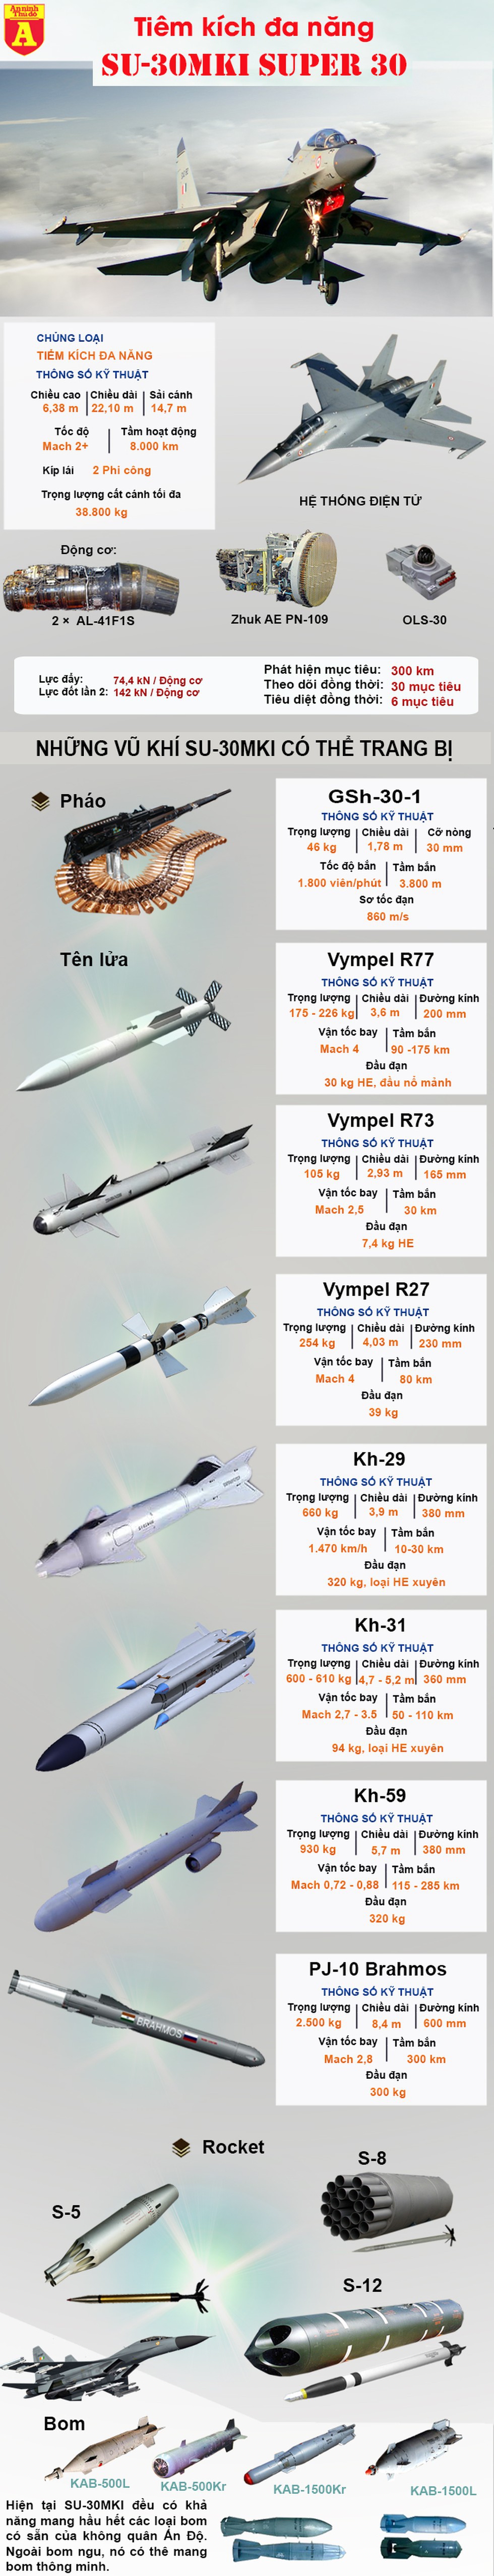 [Infographics] Ấn Độ cấp tốc mua phiên bản Su-30 mạnh nhất để làm gì? - Ảnh 1